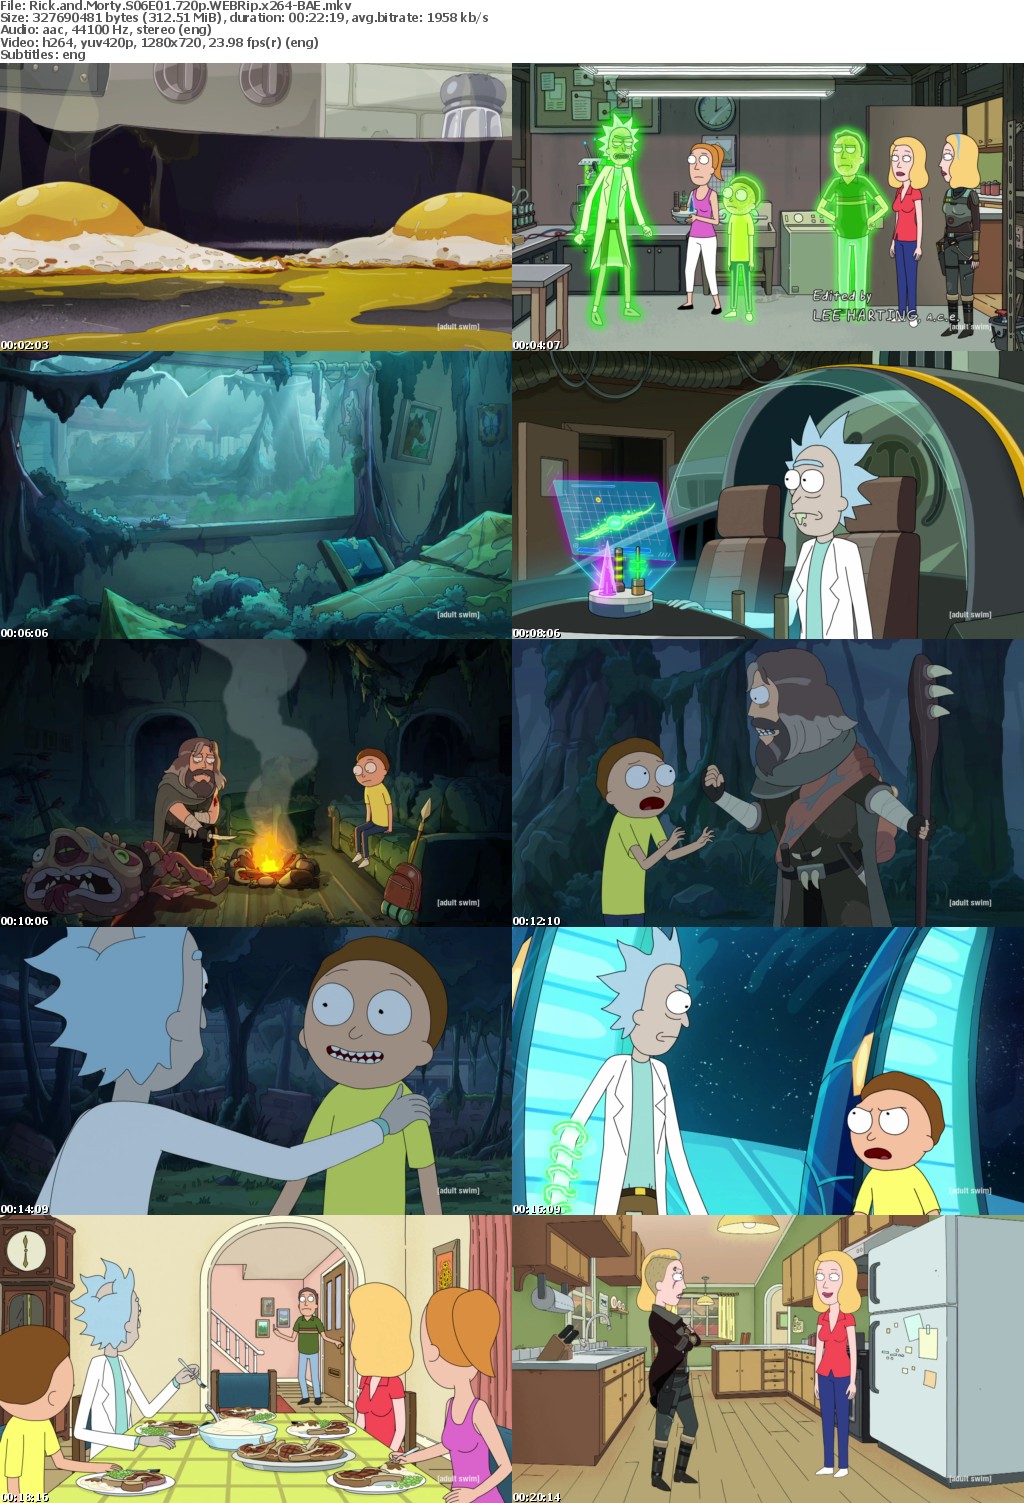 Rick and Morty S06E01 720p WEBRip x264-BAE